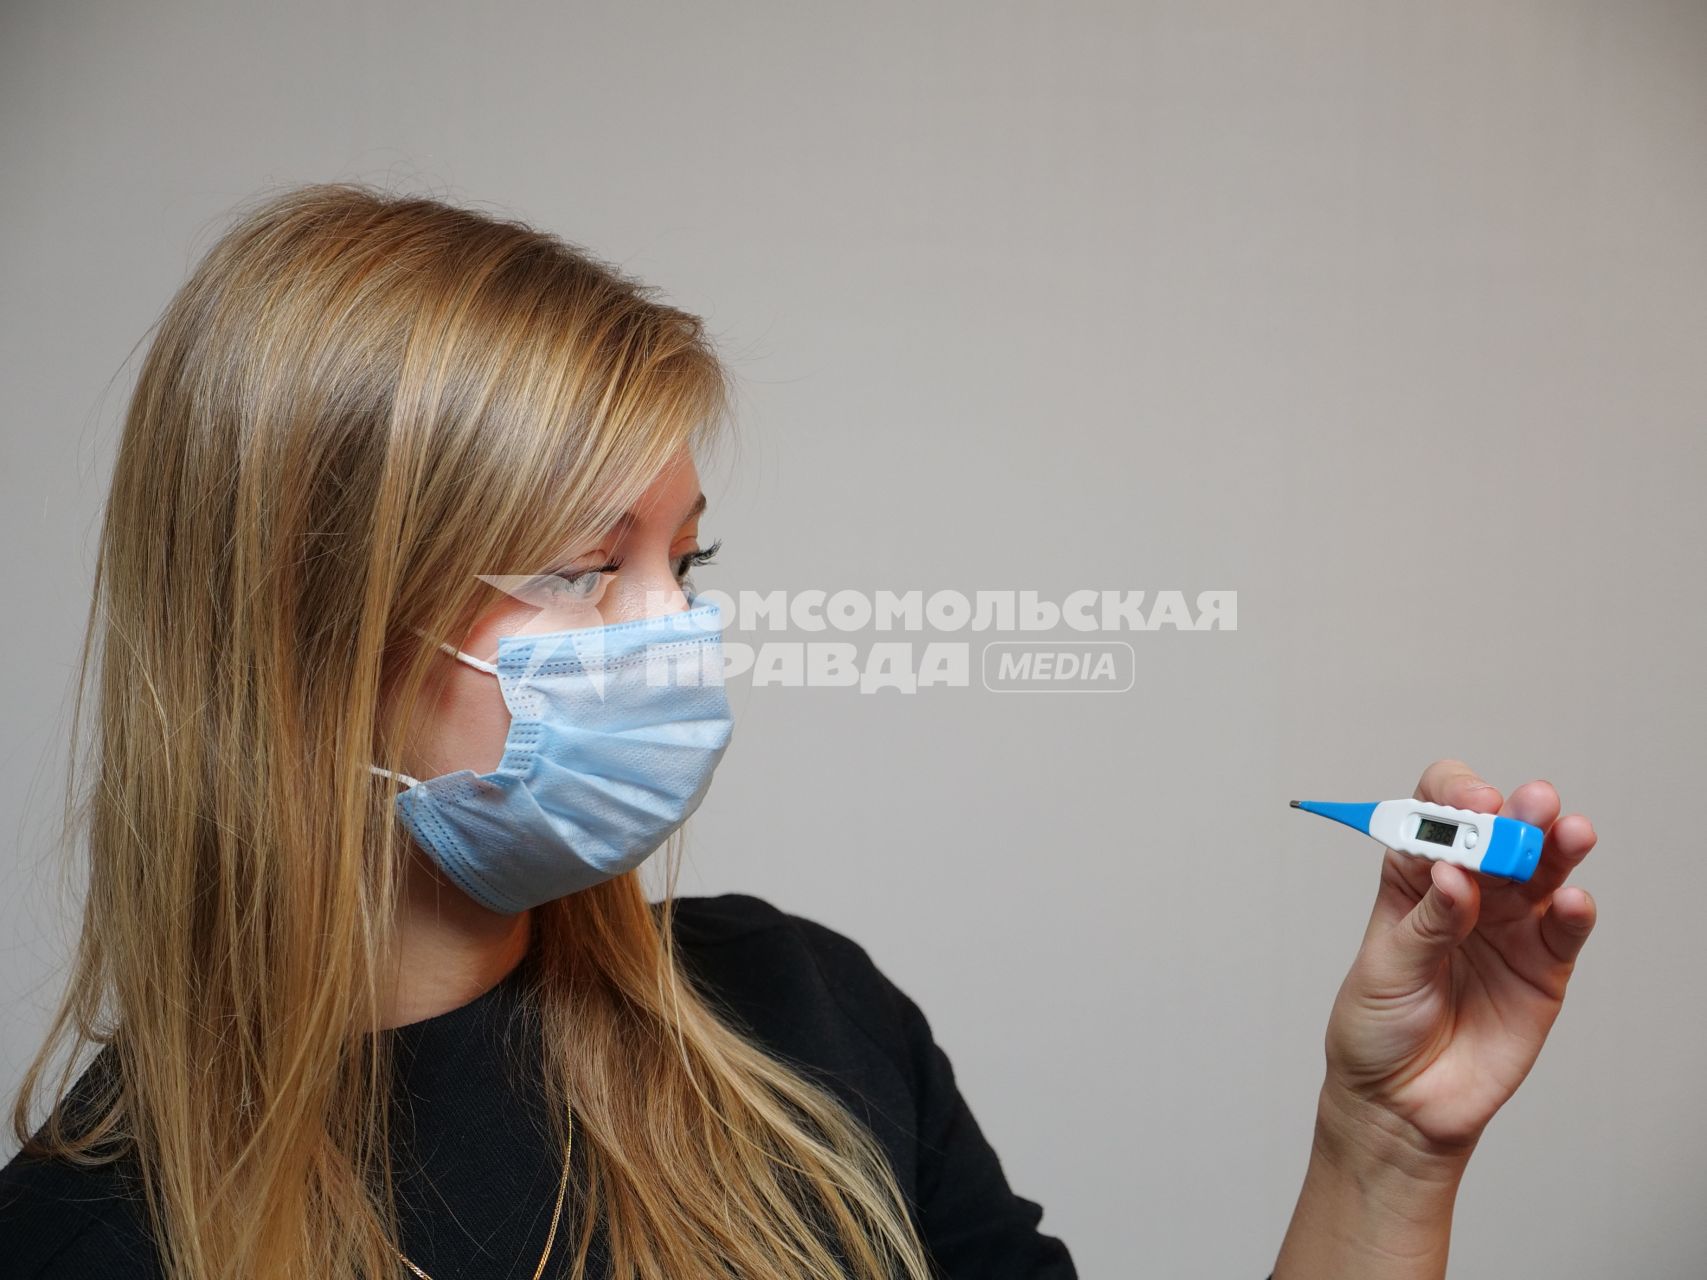 Самара.   Девушка в медицинской маске держит в руке электронный градусник.